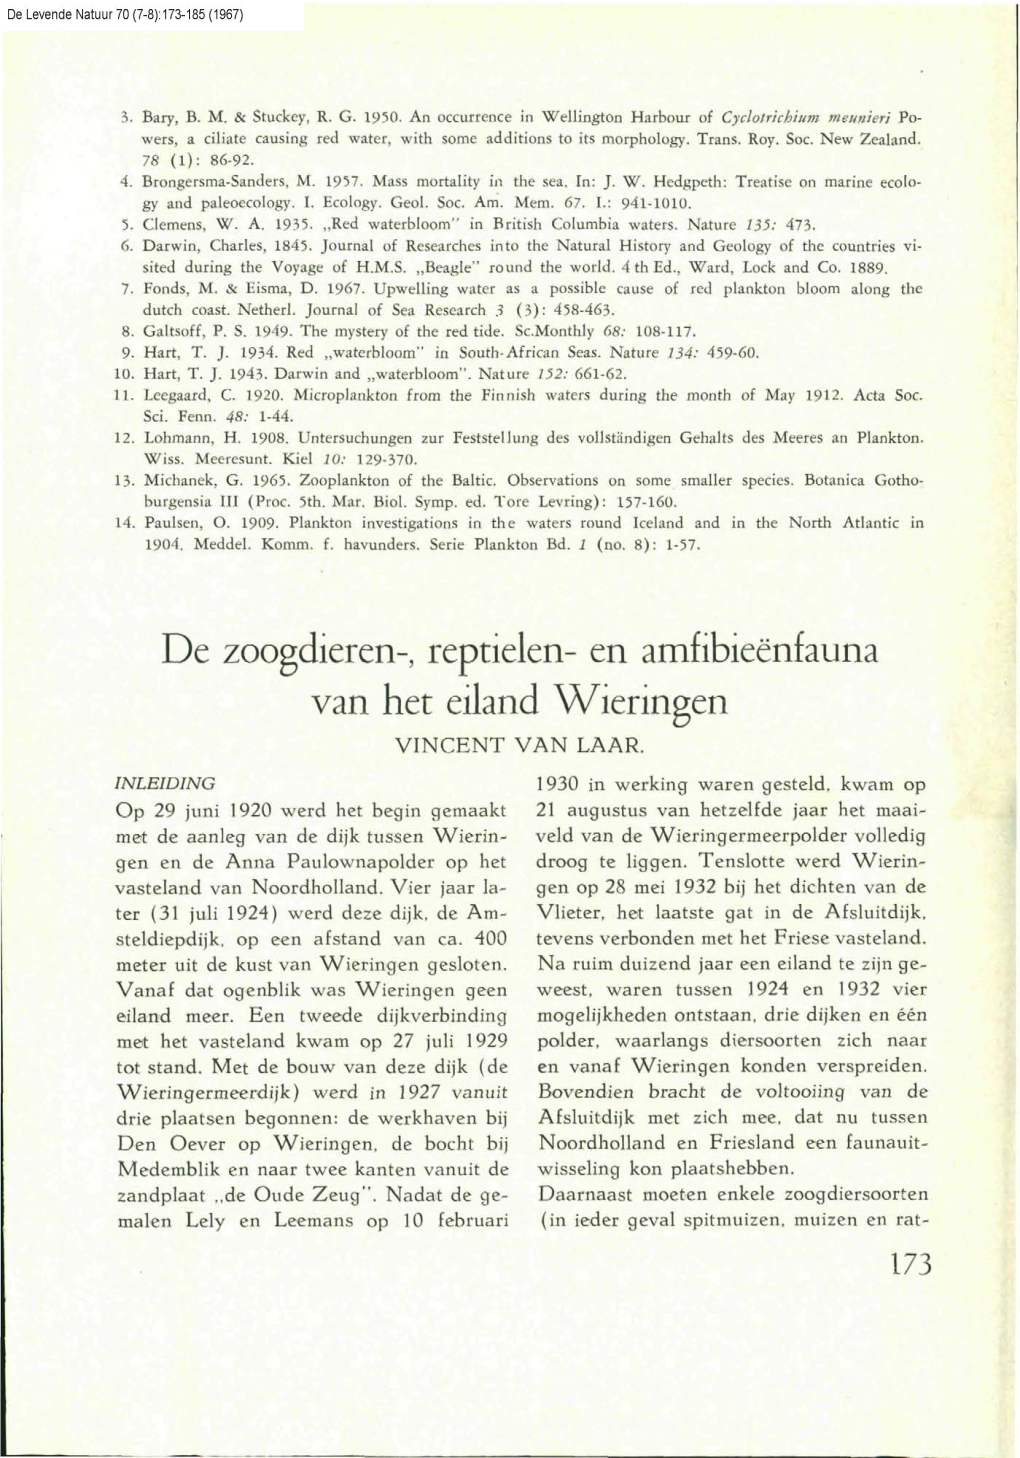 Laar, V. Van (1967) De Zoogdieren-, Reptielen- En Amfibienfauna Van Het